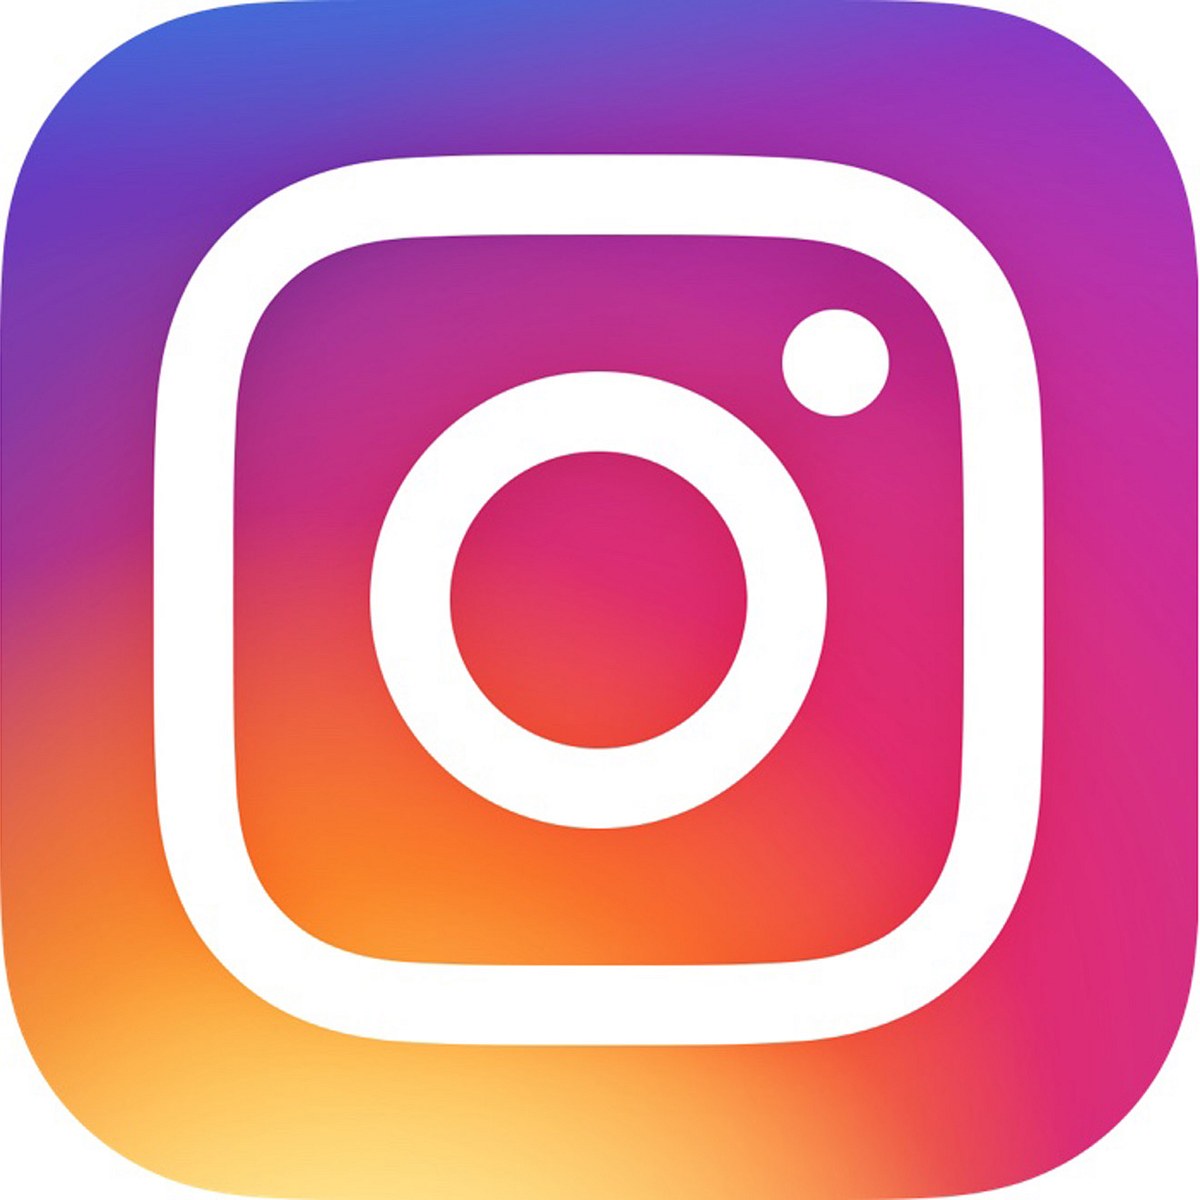 Instagram versorgt uns immer wieder mit neuen Funktionen